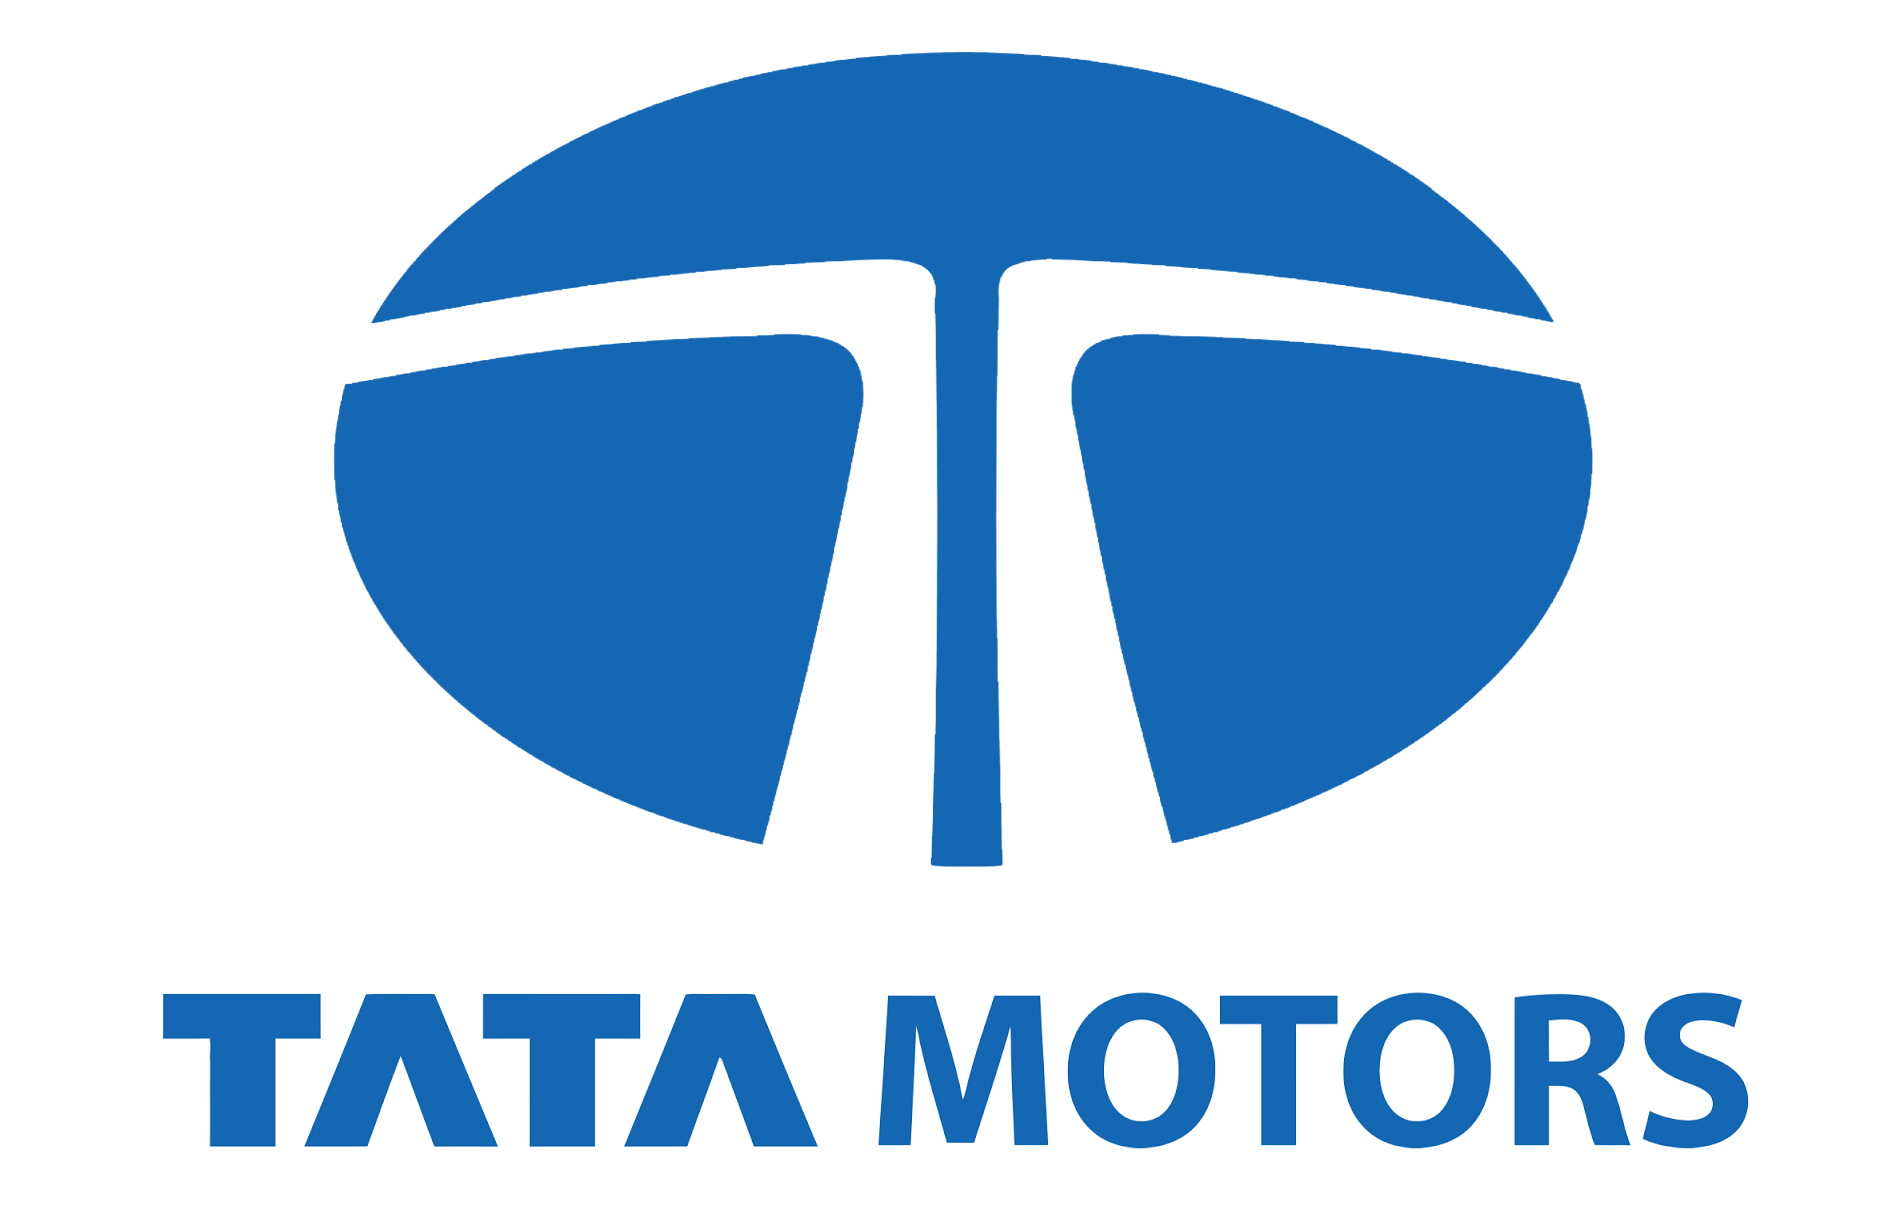 Tata Motors Cars Showroom - Cauvery Motors Pvt Ltd|Show Room|Automotive